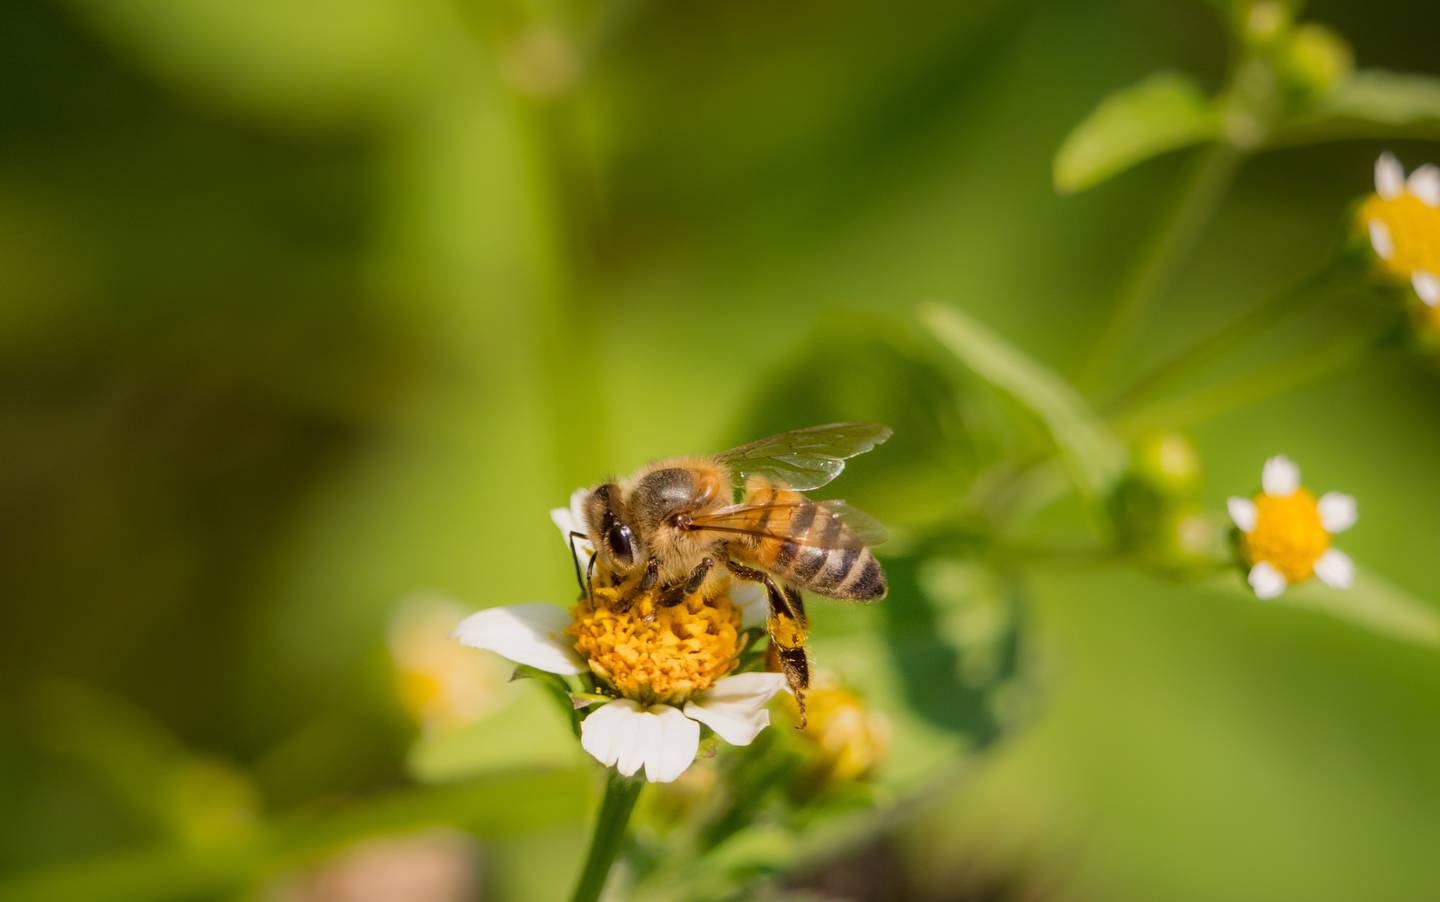 De acuerdo con los organizadores, el papel polinizador de abejas y otros insectos permite la producción del 75% de los alimentos en Costa Rica. Fotografía: Cortesía.